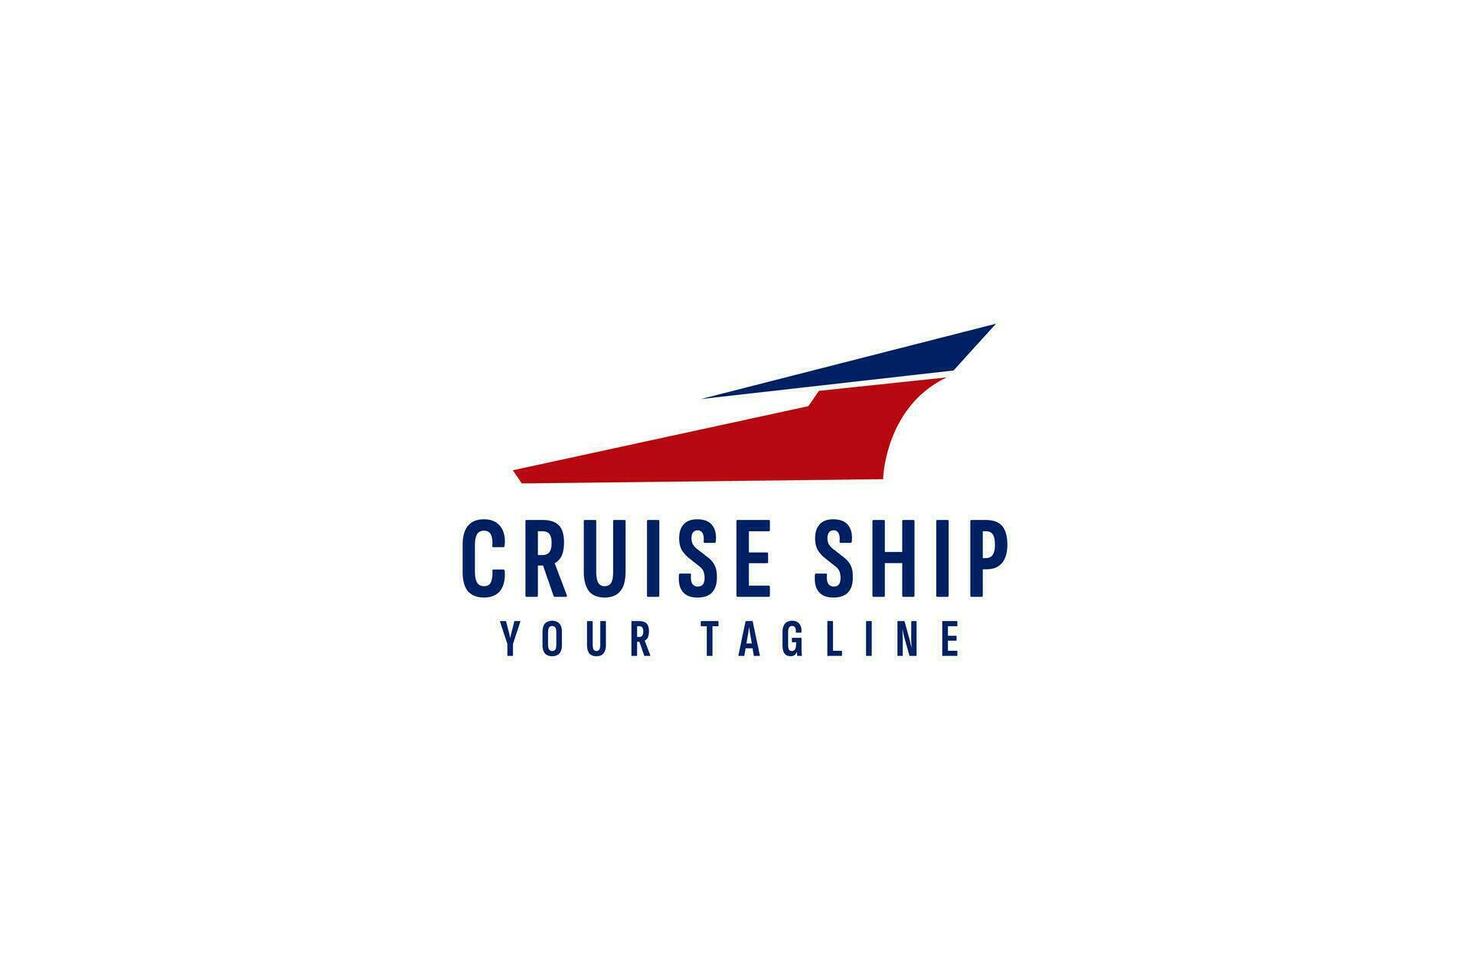 Cruise ship logo vector icon illustration